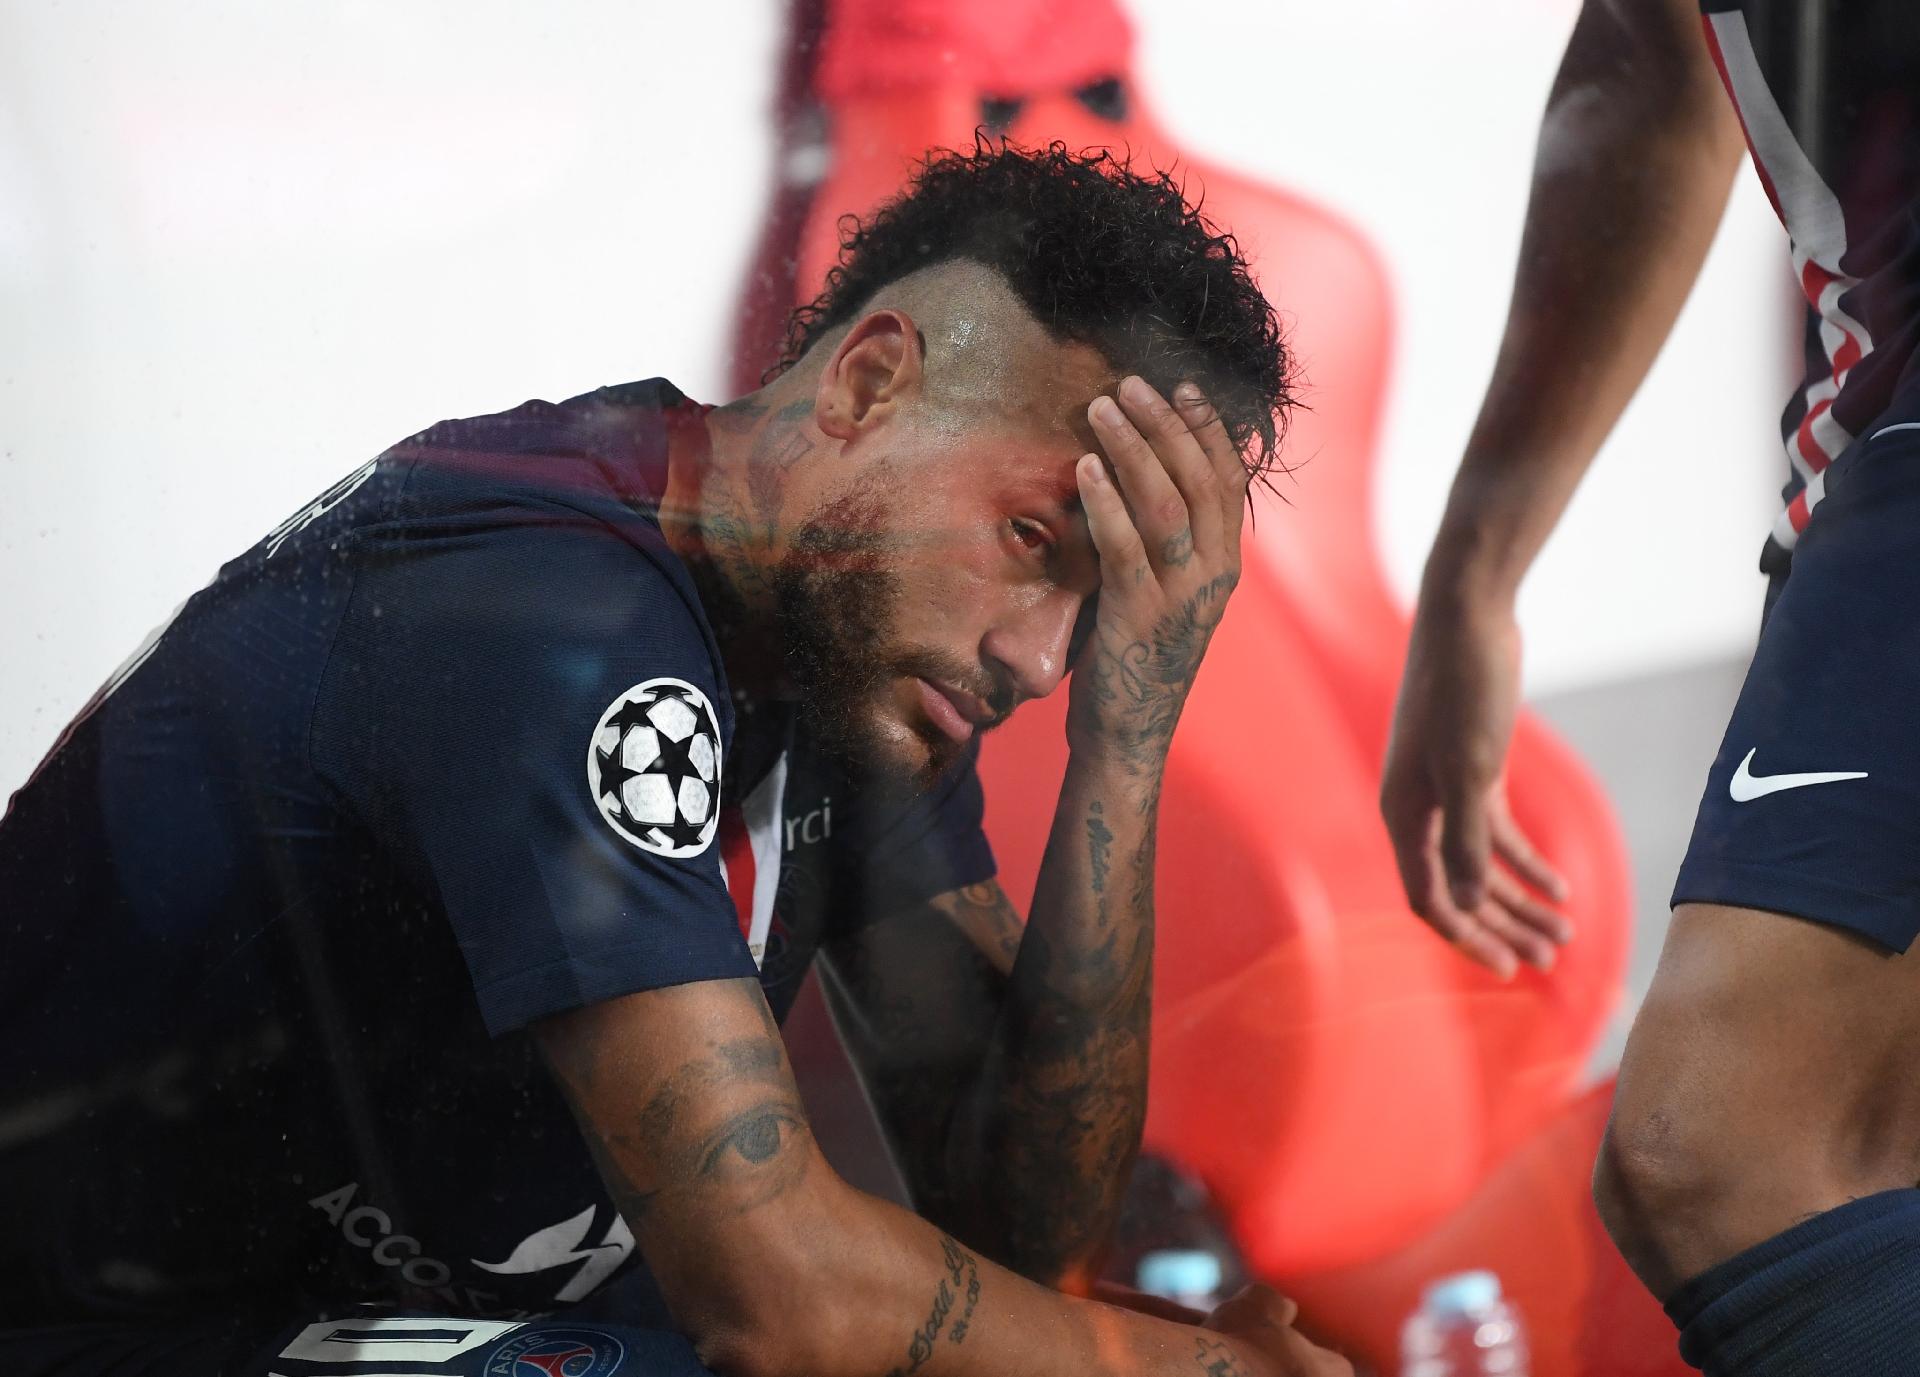 A derrota do Paris Saint-Germain ainda pode ser uma vitória de Neymar